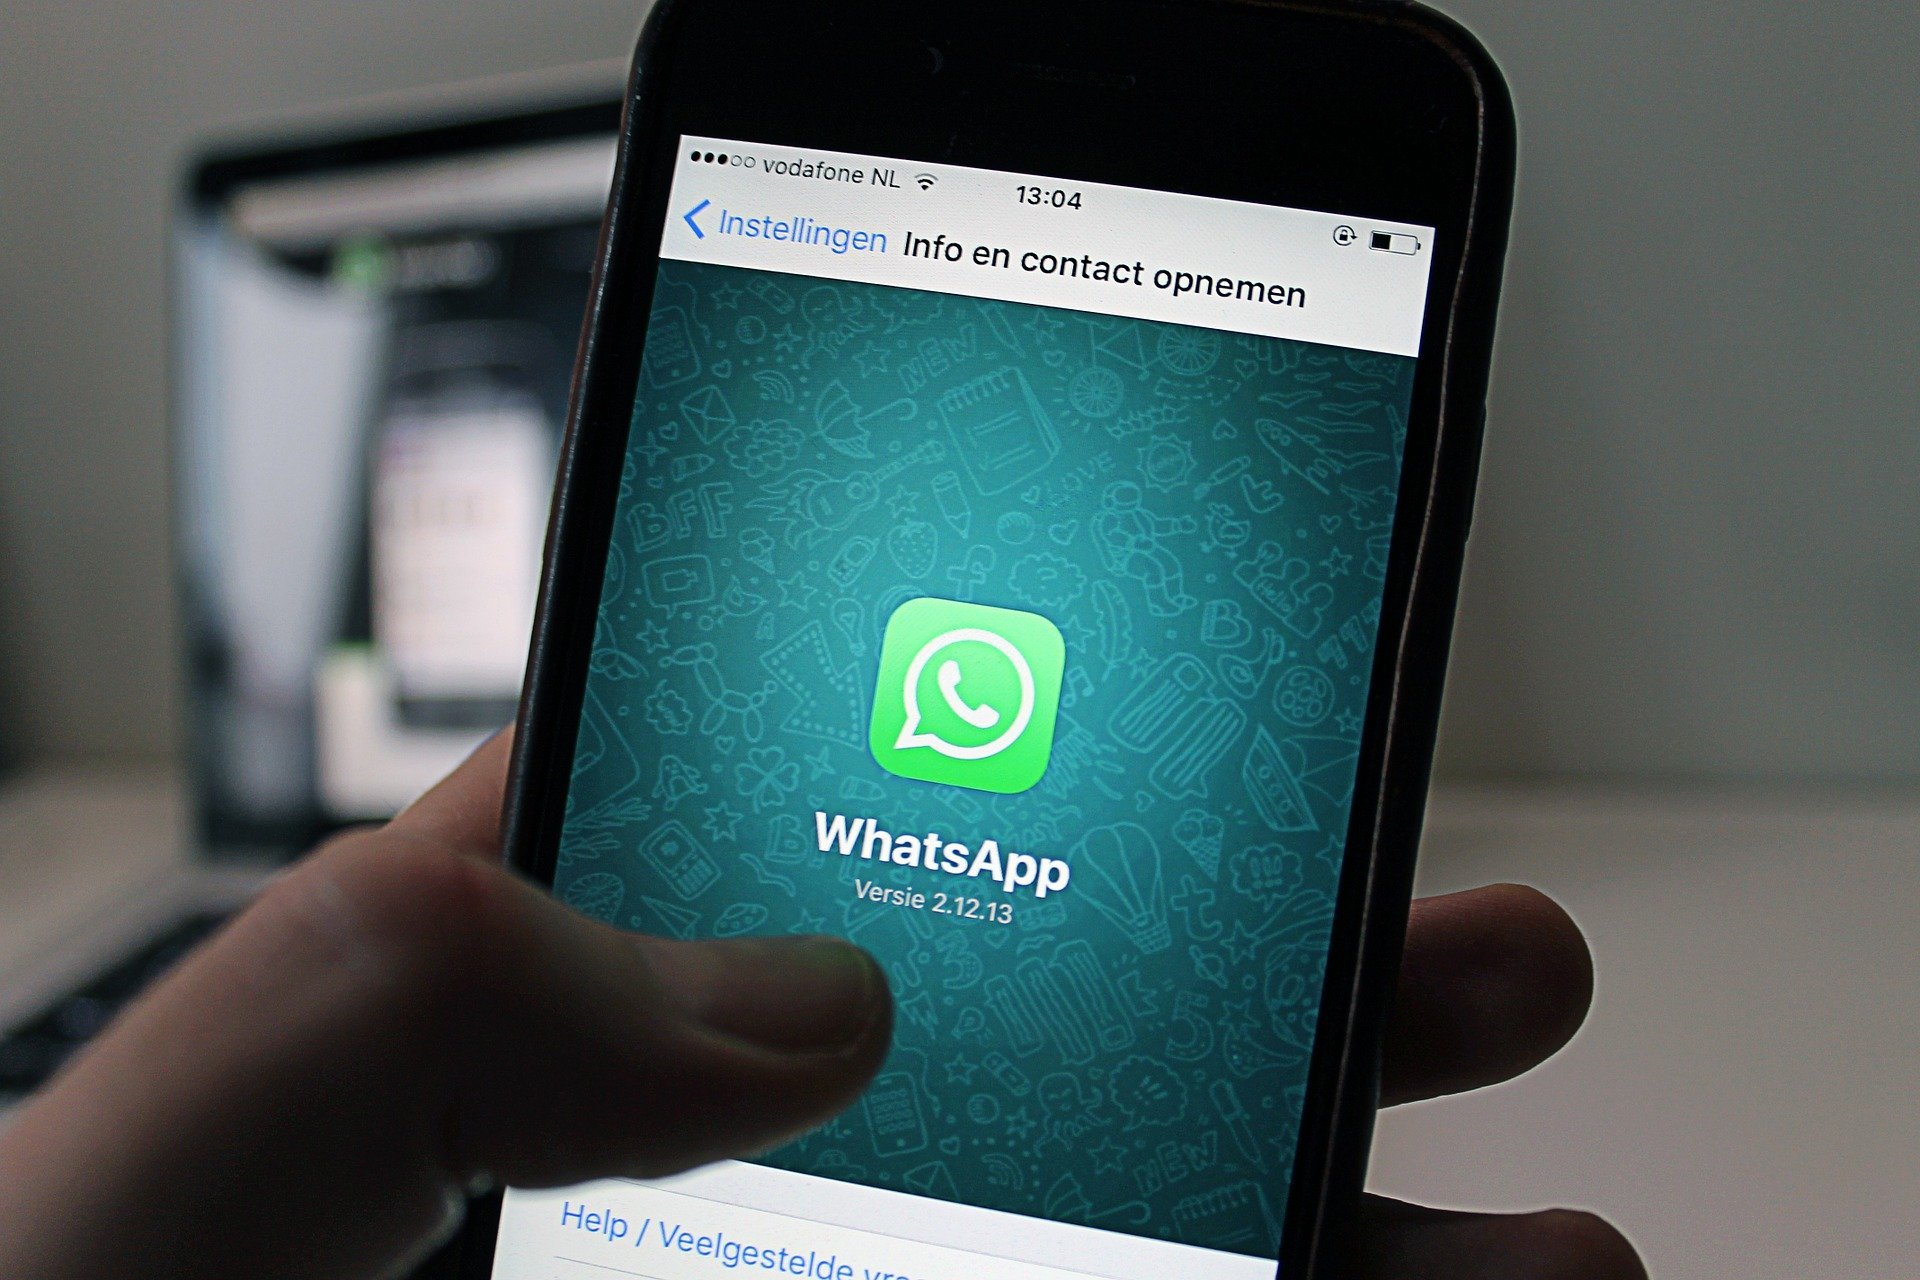 Segundo Clegg, criptografia do WhatsApp é inviolável (Fonte: Pixabay)